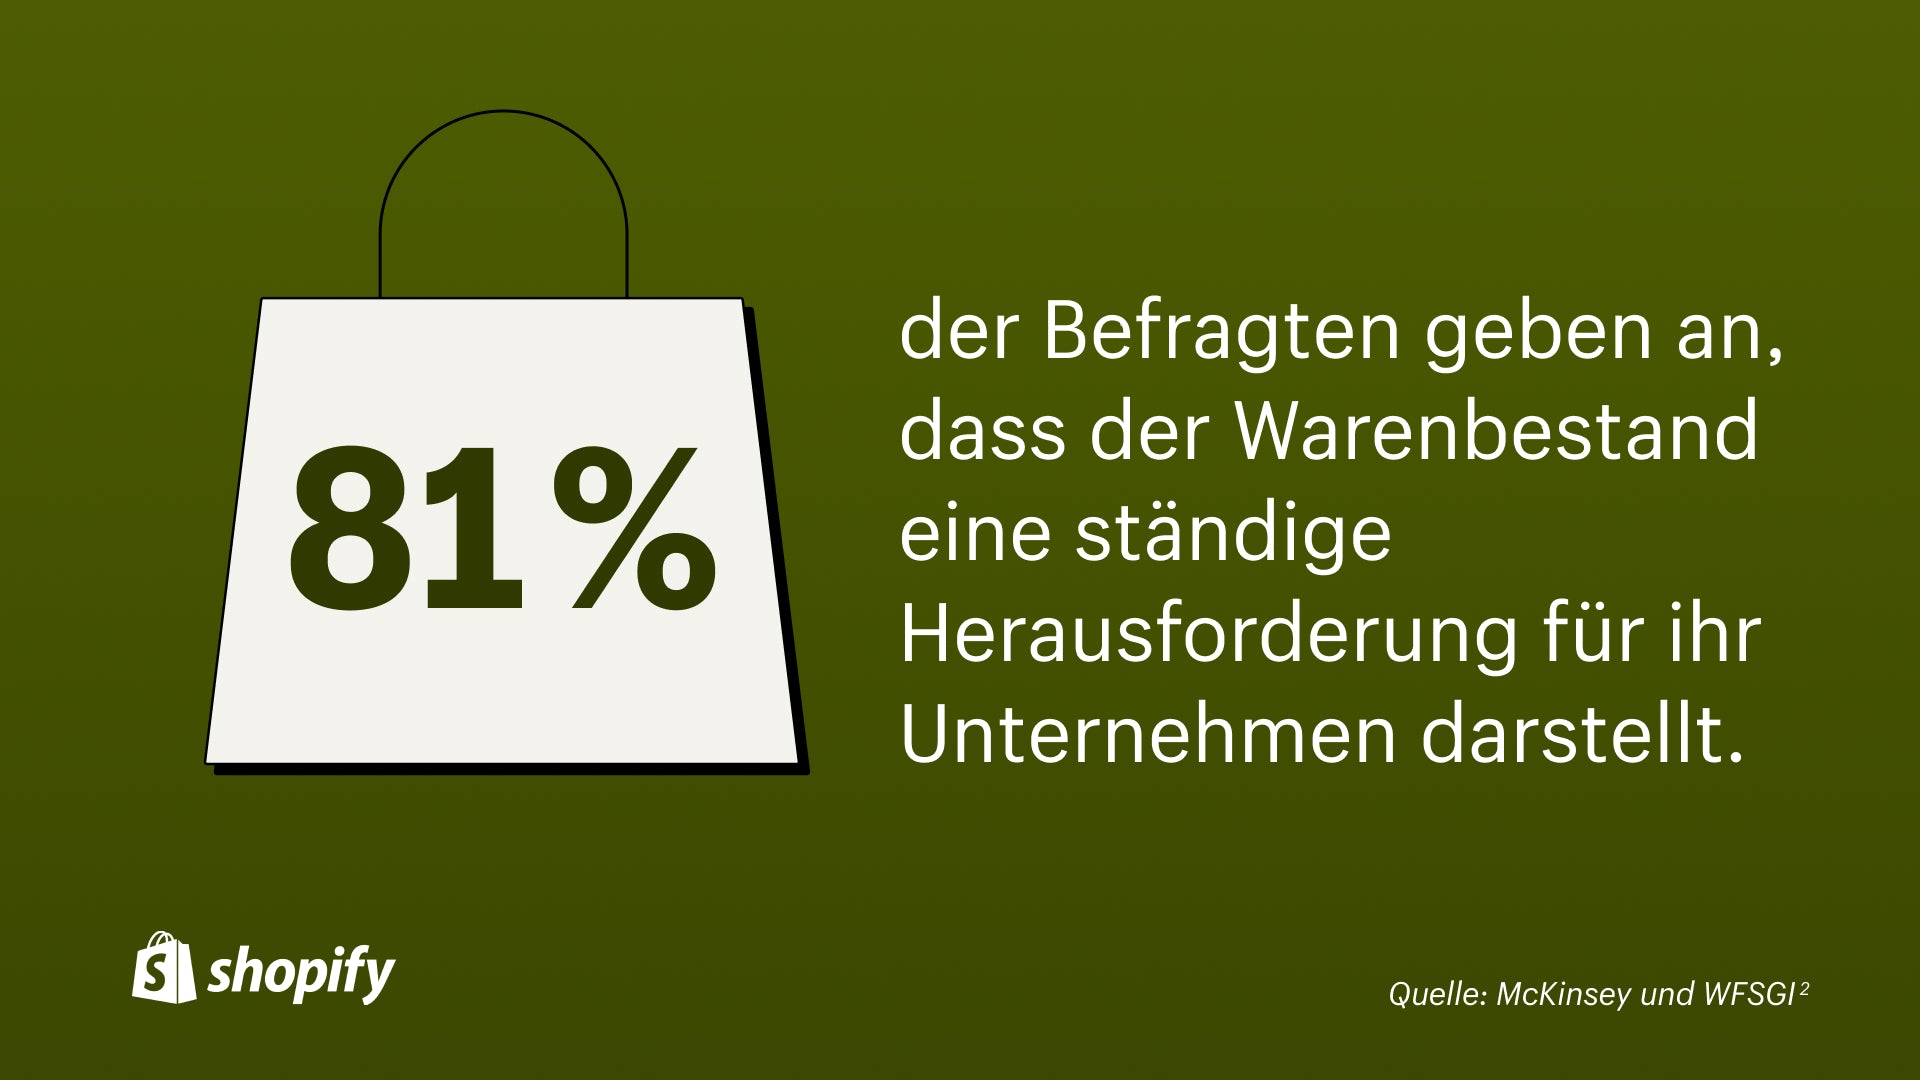 Grüner Hintergrund mit einer weißen Cartoon-Einkaufstasche und einem Fakt, der besagt: „81 % der Befragten geben an, dass die Lagerbestände eine ständige Herausforderung für ihr Unternehmen darstellen.“